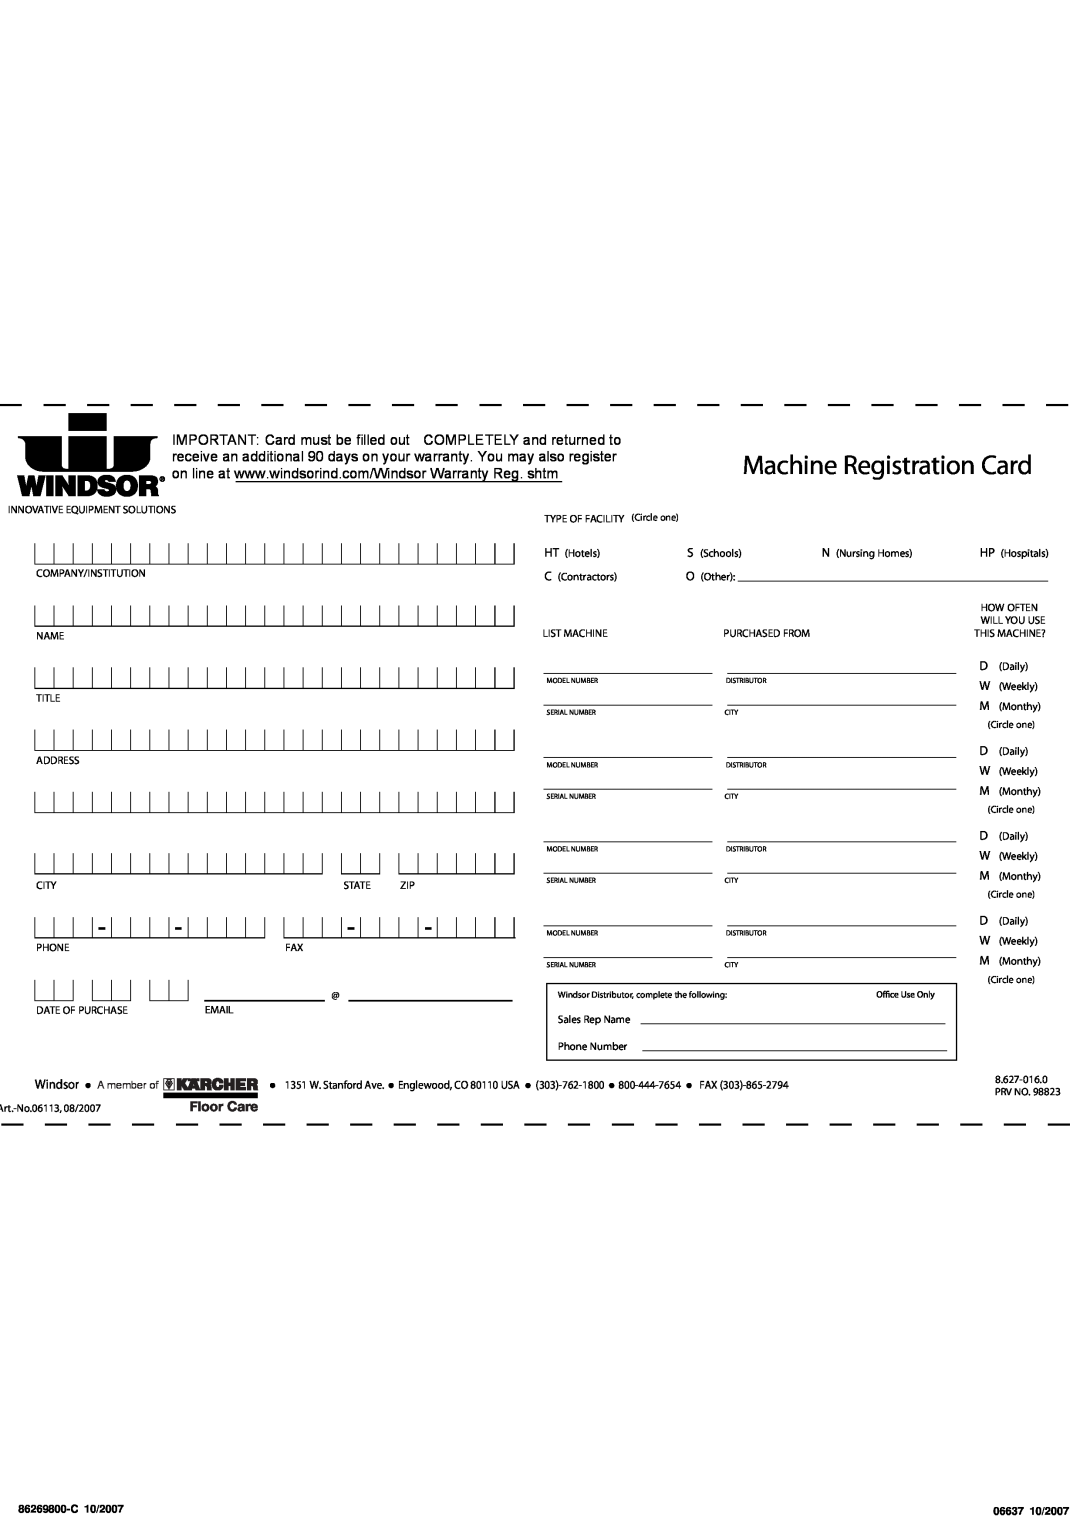 Windsor XP 18, SRXP18, 10120300 manual Machine Registration Card, Windsor, A member of 